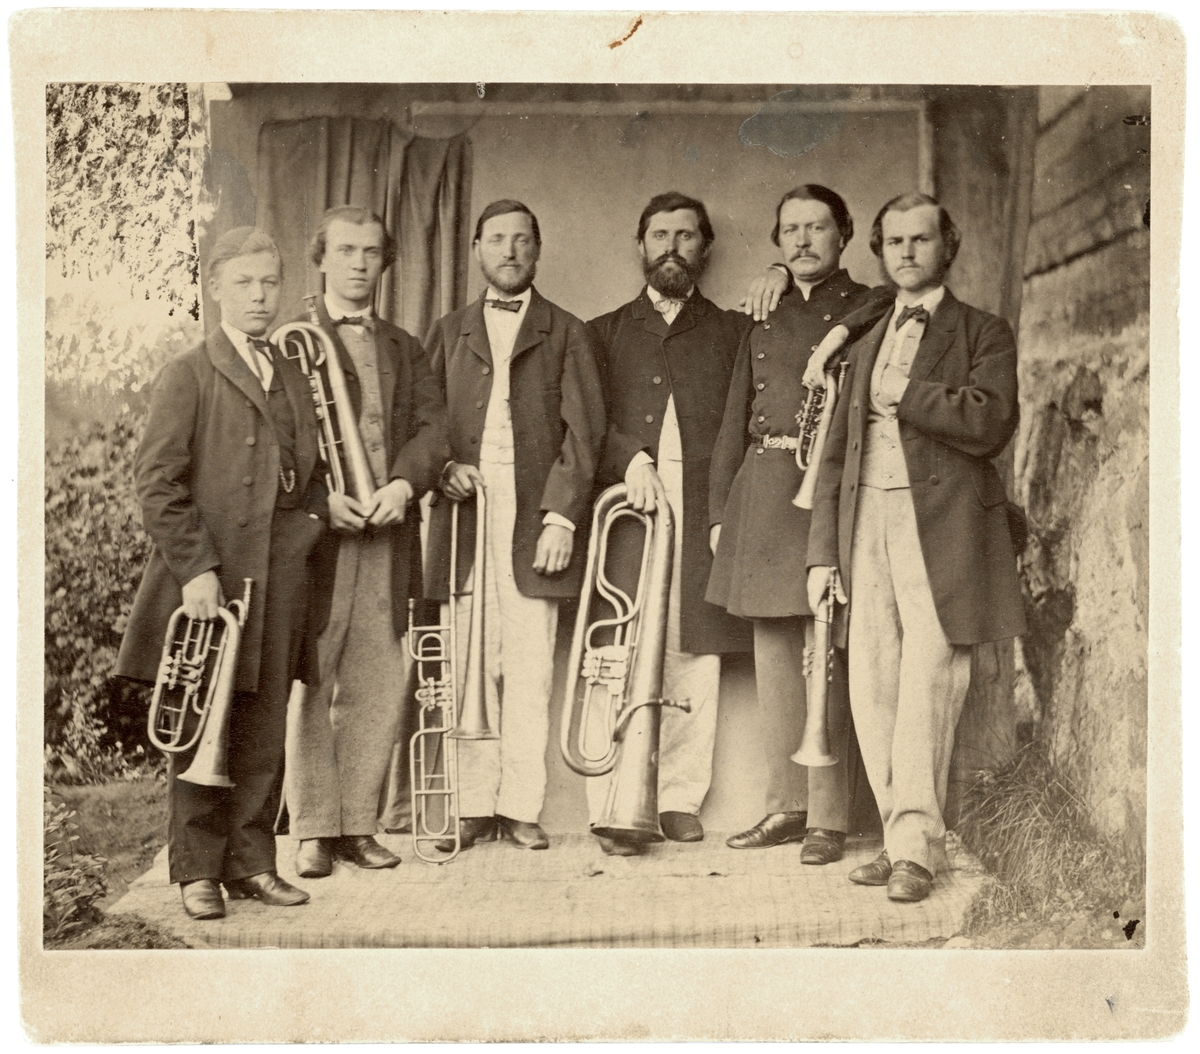 Orkester som kan knytas till Reijmyre glasbruk. Påskrift namnger fem av musikanterna;  Edvard André, Georg Schmidt, Alfred Schmidt, Oskar Schmidt och Vilhelm Heintze.